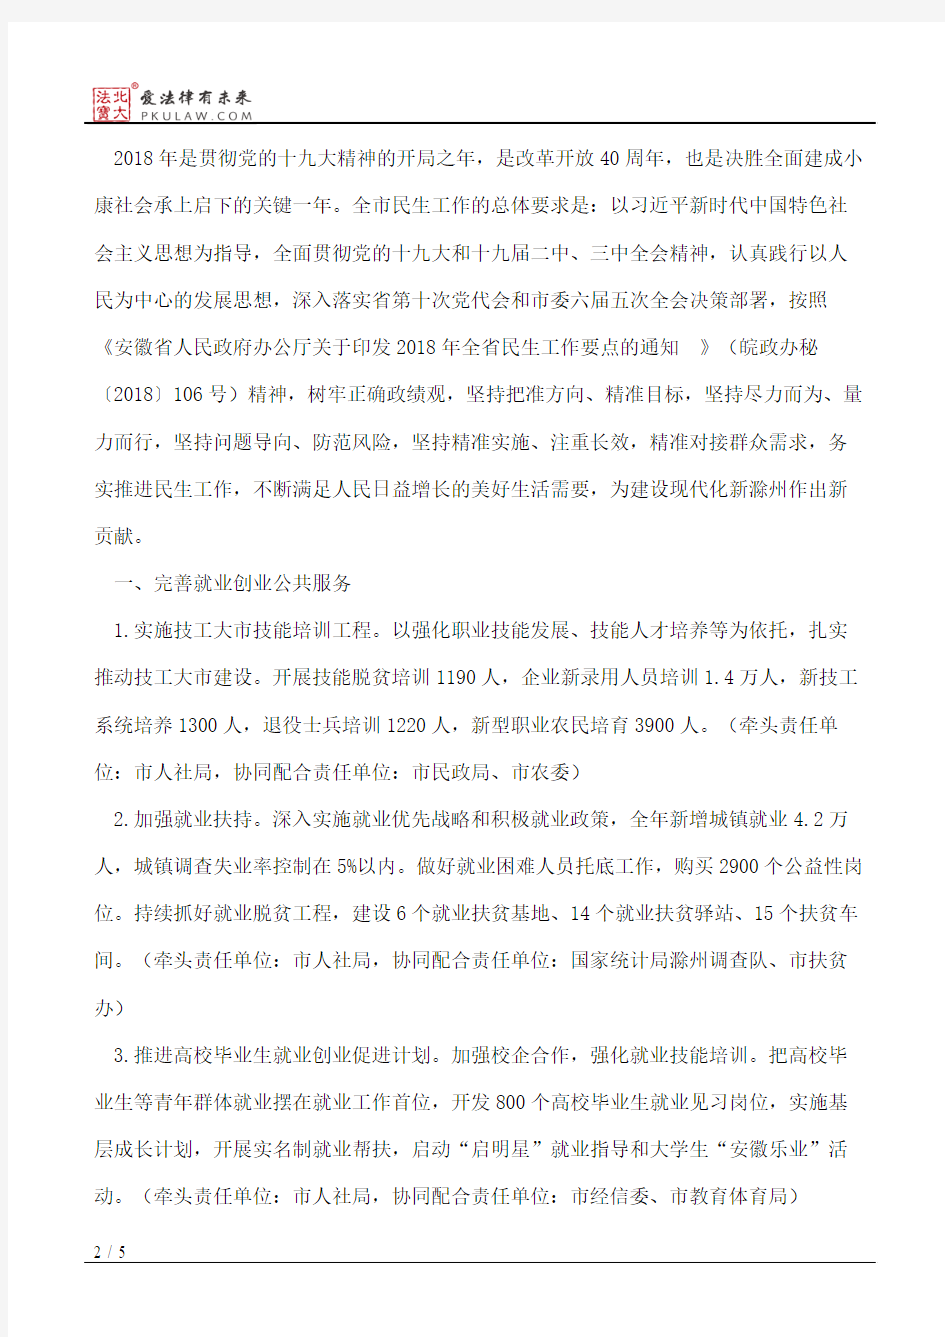 滁州市人民政府办公室关于印发2018年全市民生工作要点的通知